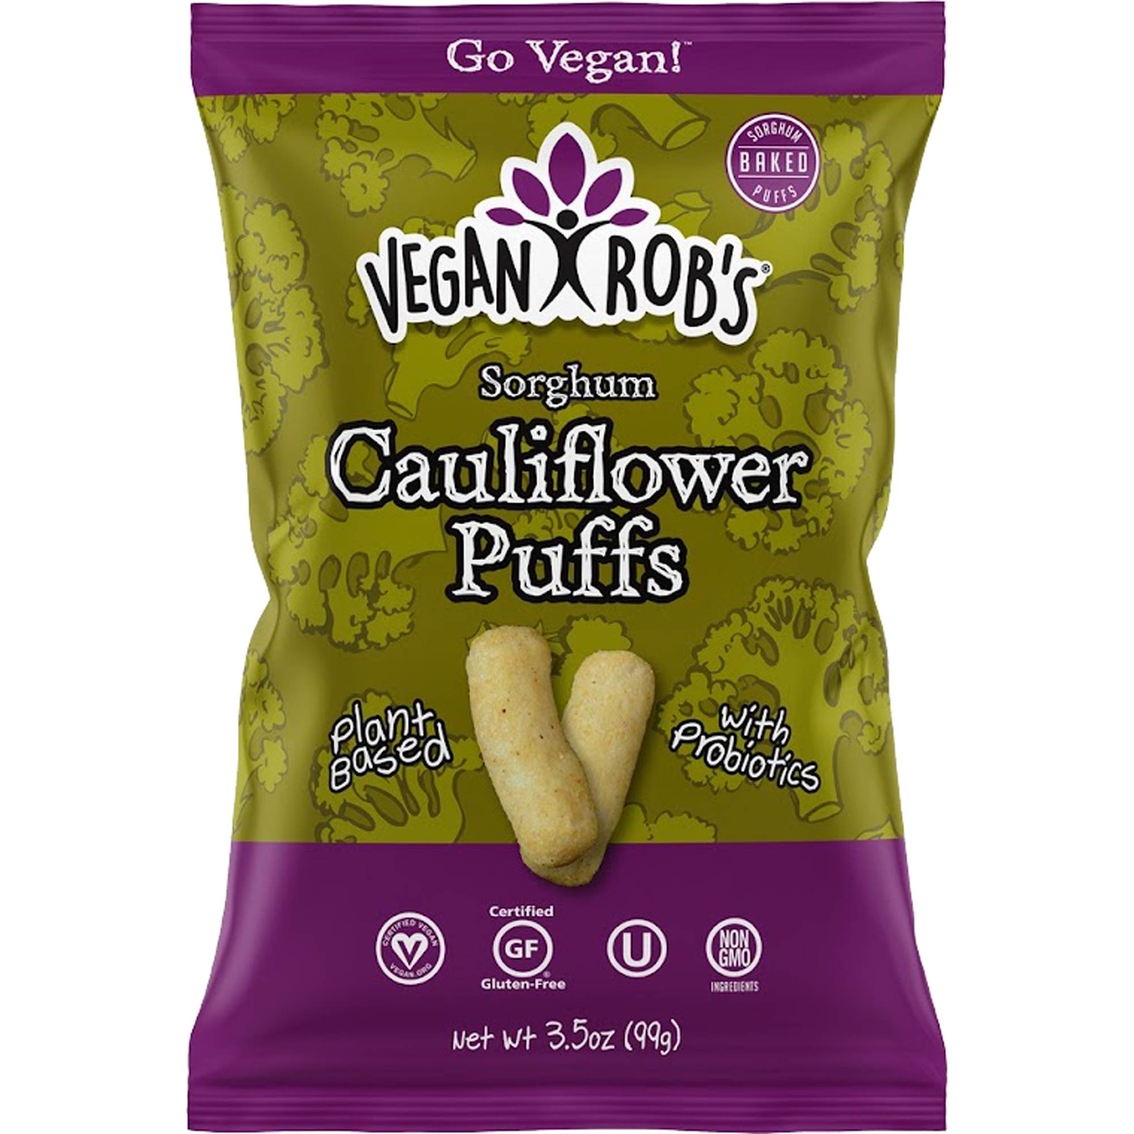 Vegan Rob's Sorghum Cauliflower Puffs 12 pk., 3.5 oz. each